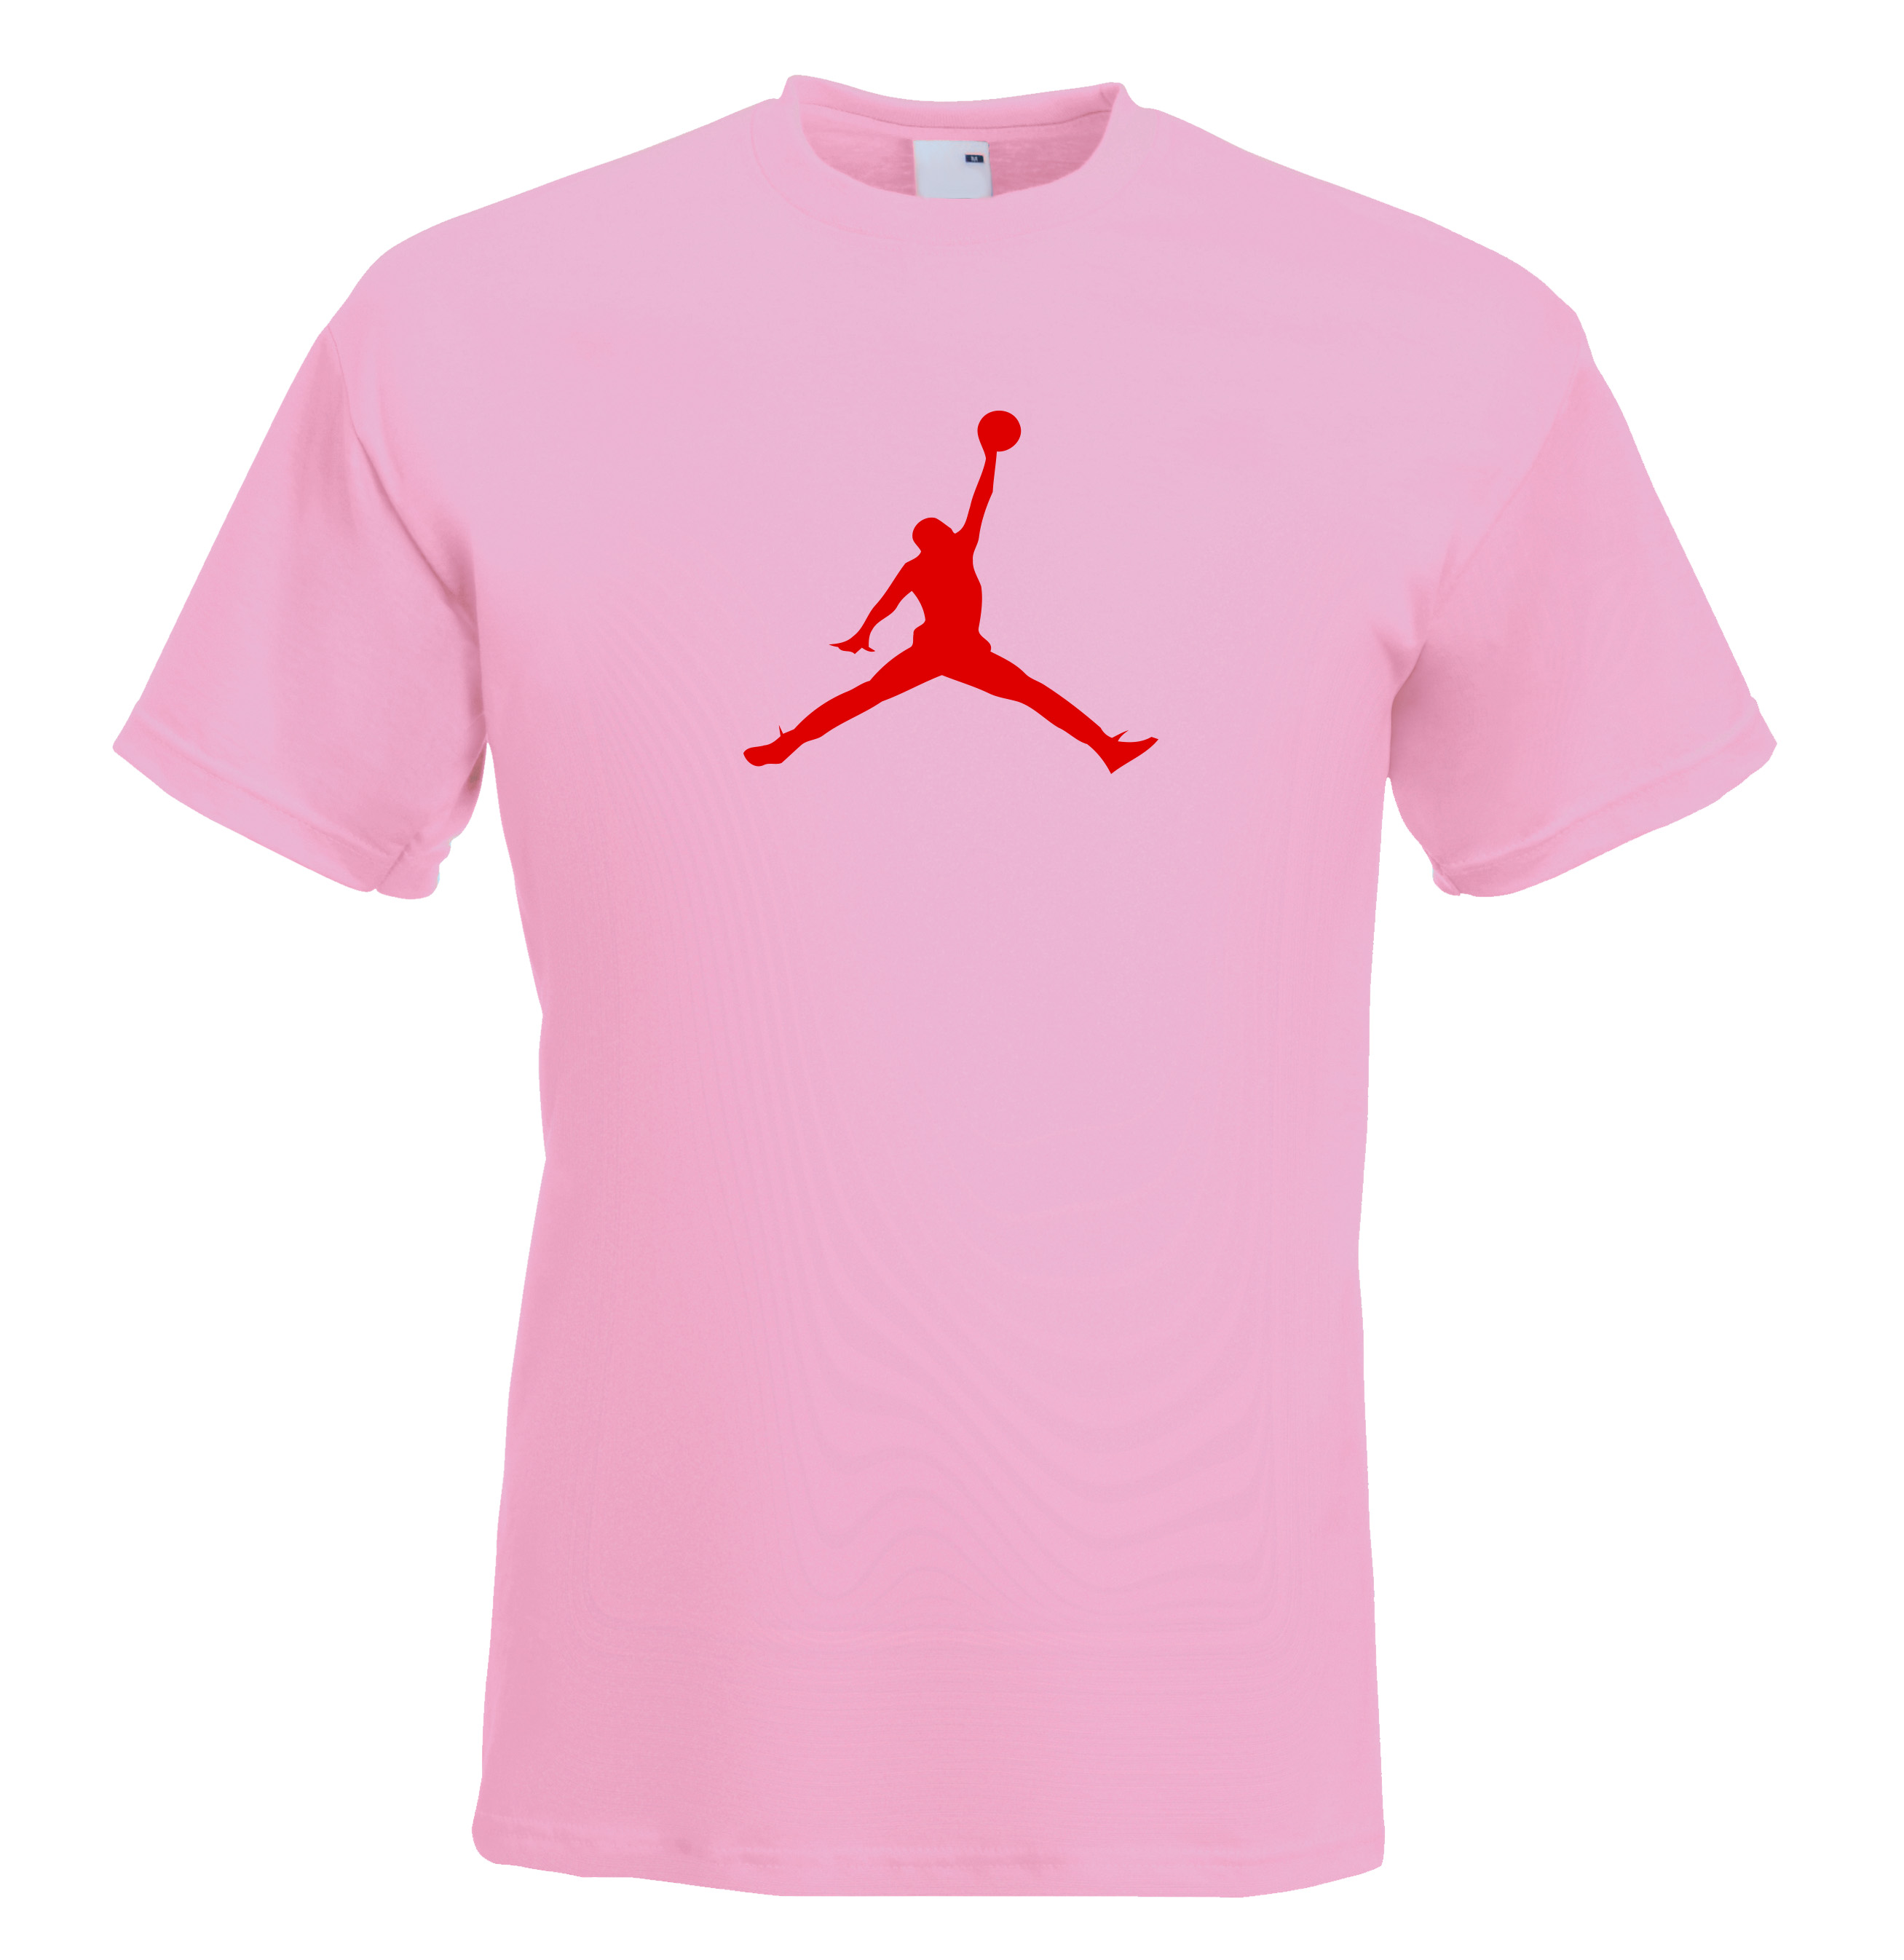 jordan pink t shirt